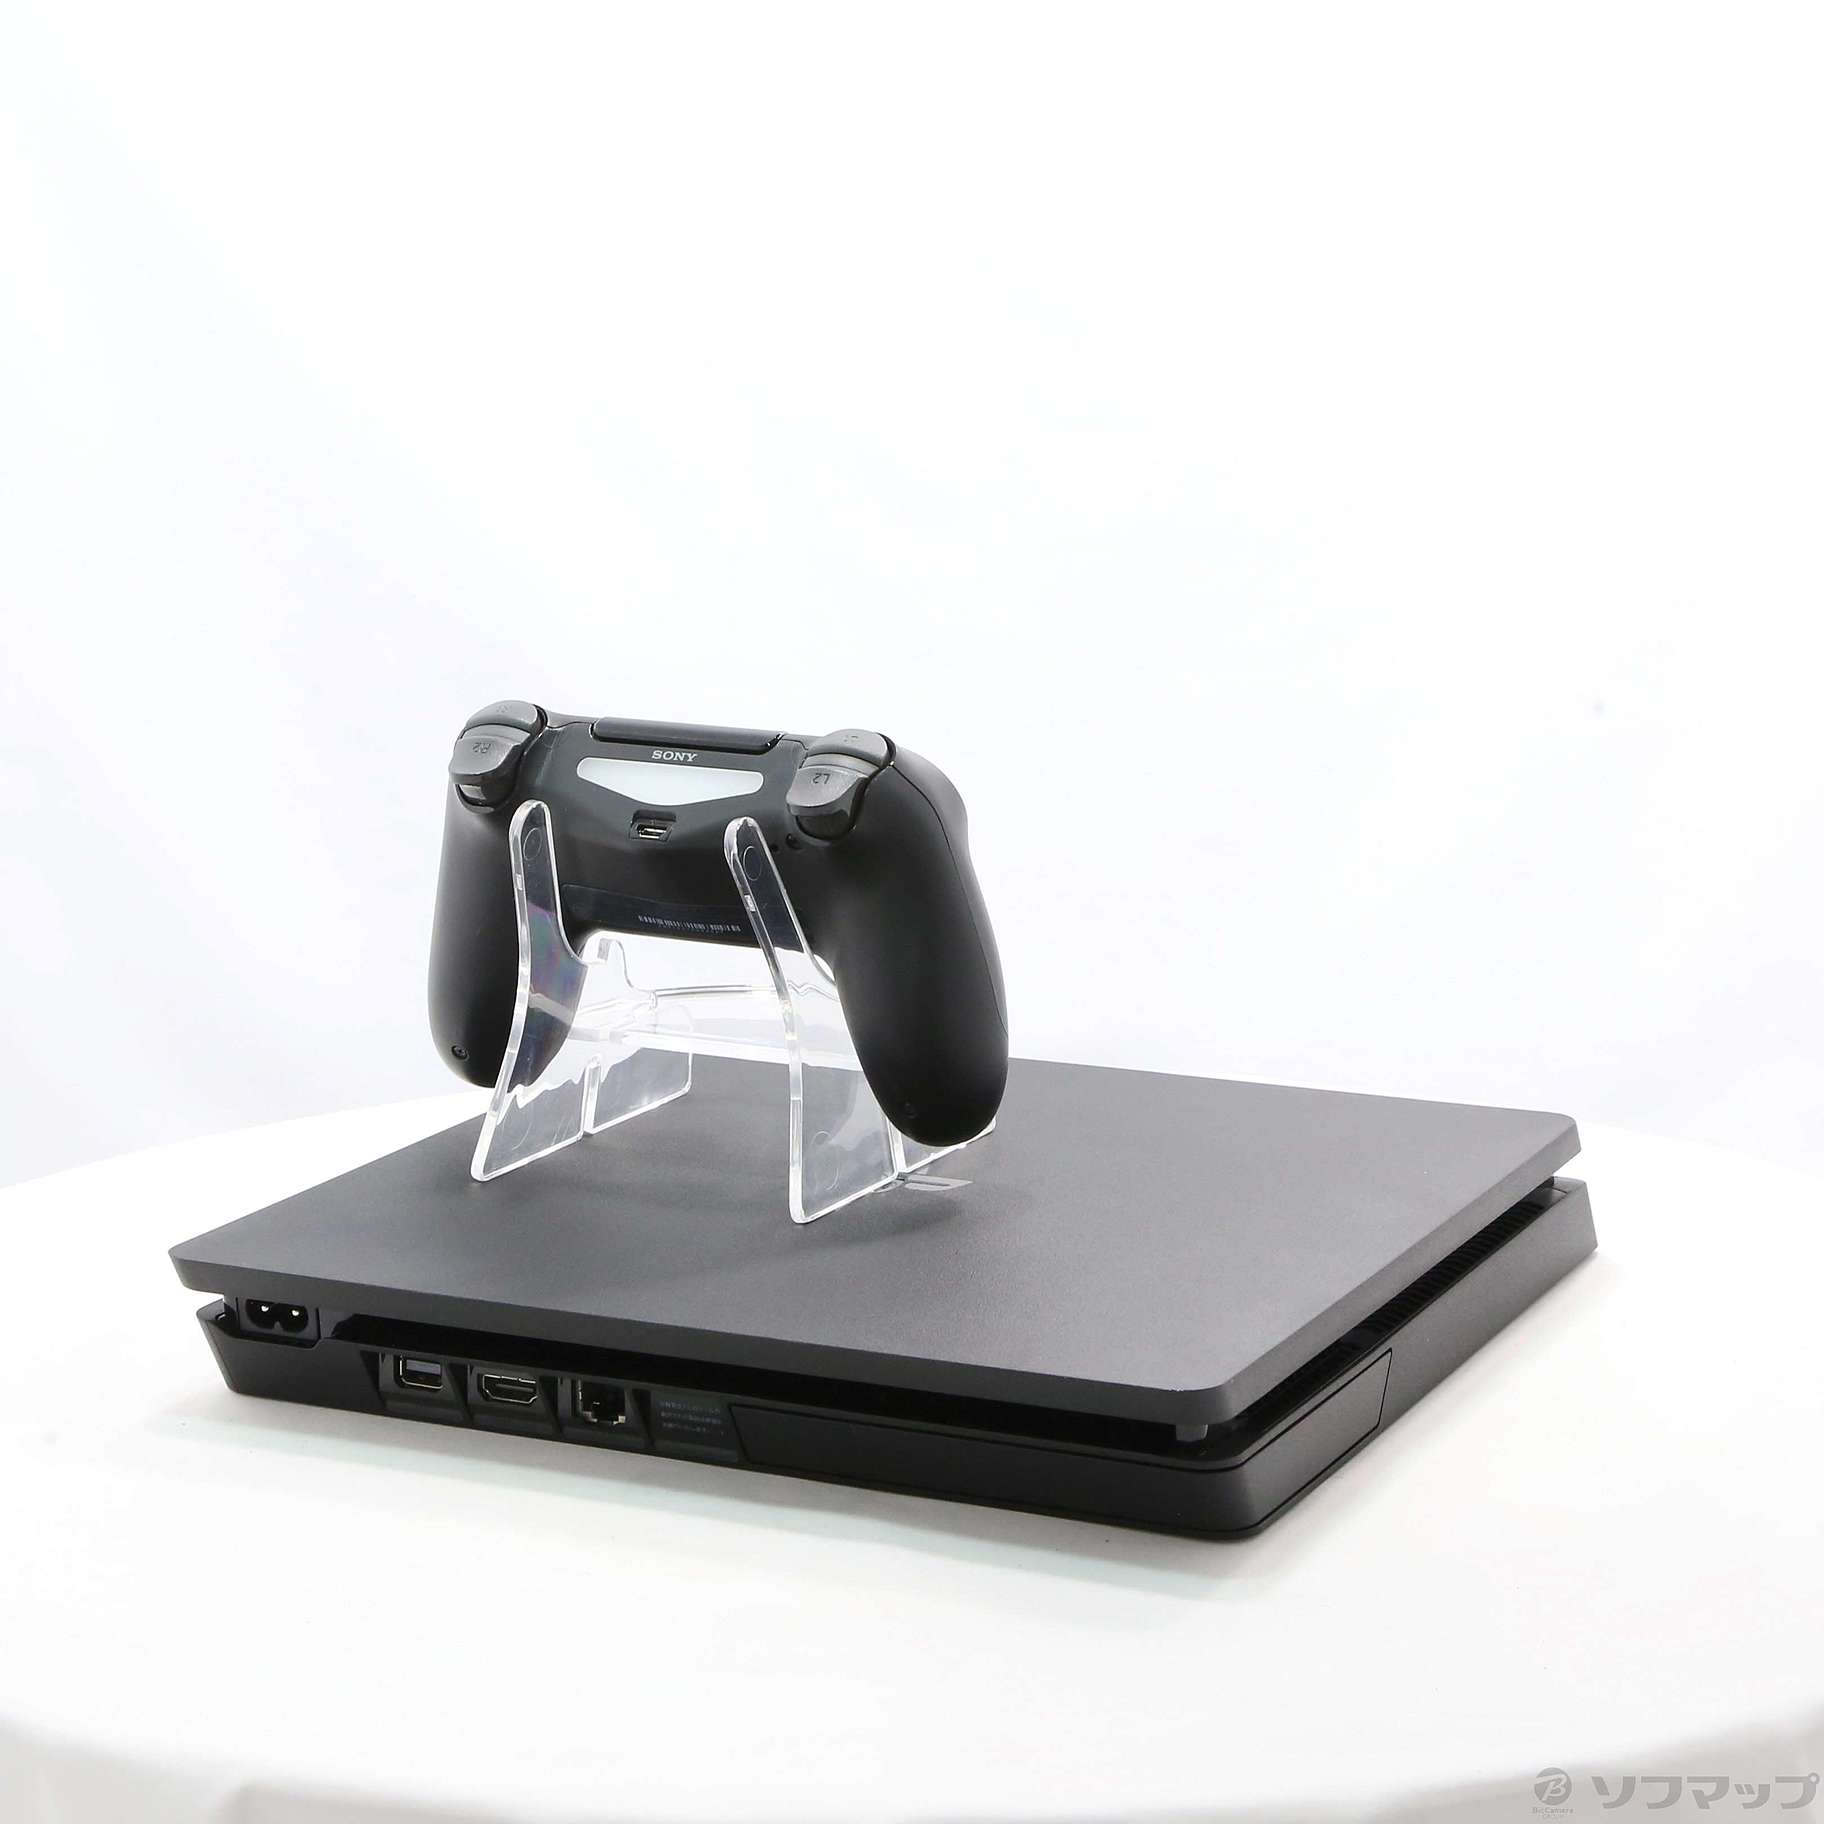 SONY PlayStation4 本体 CUH-2200AB01 値下げ！